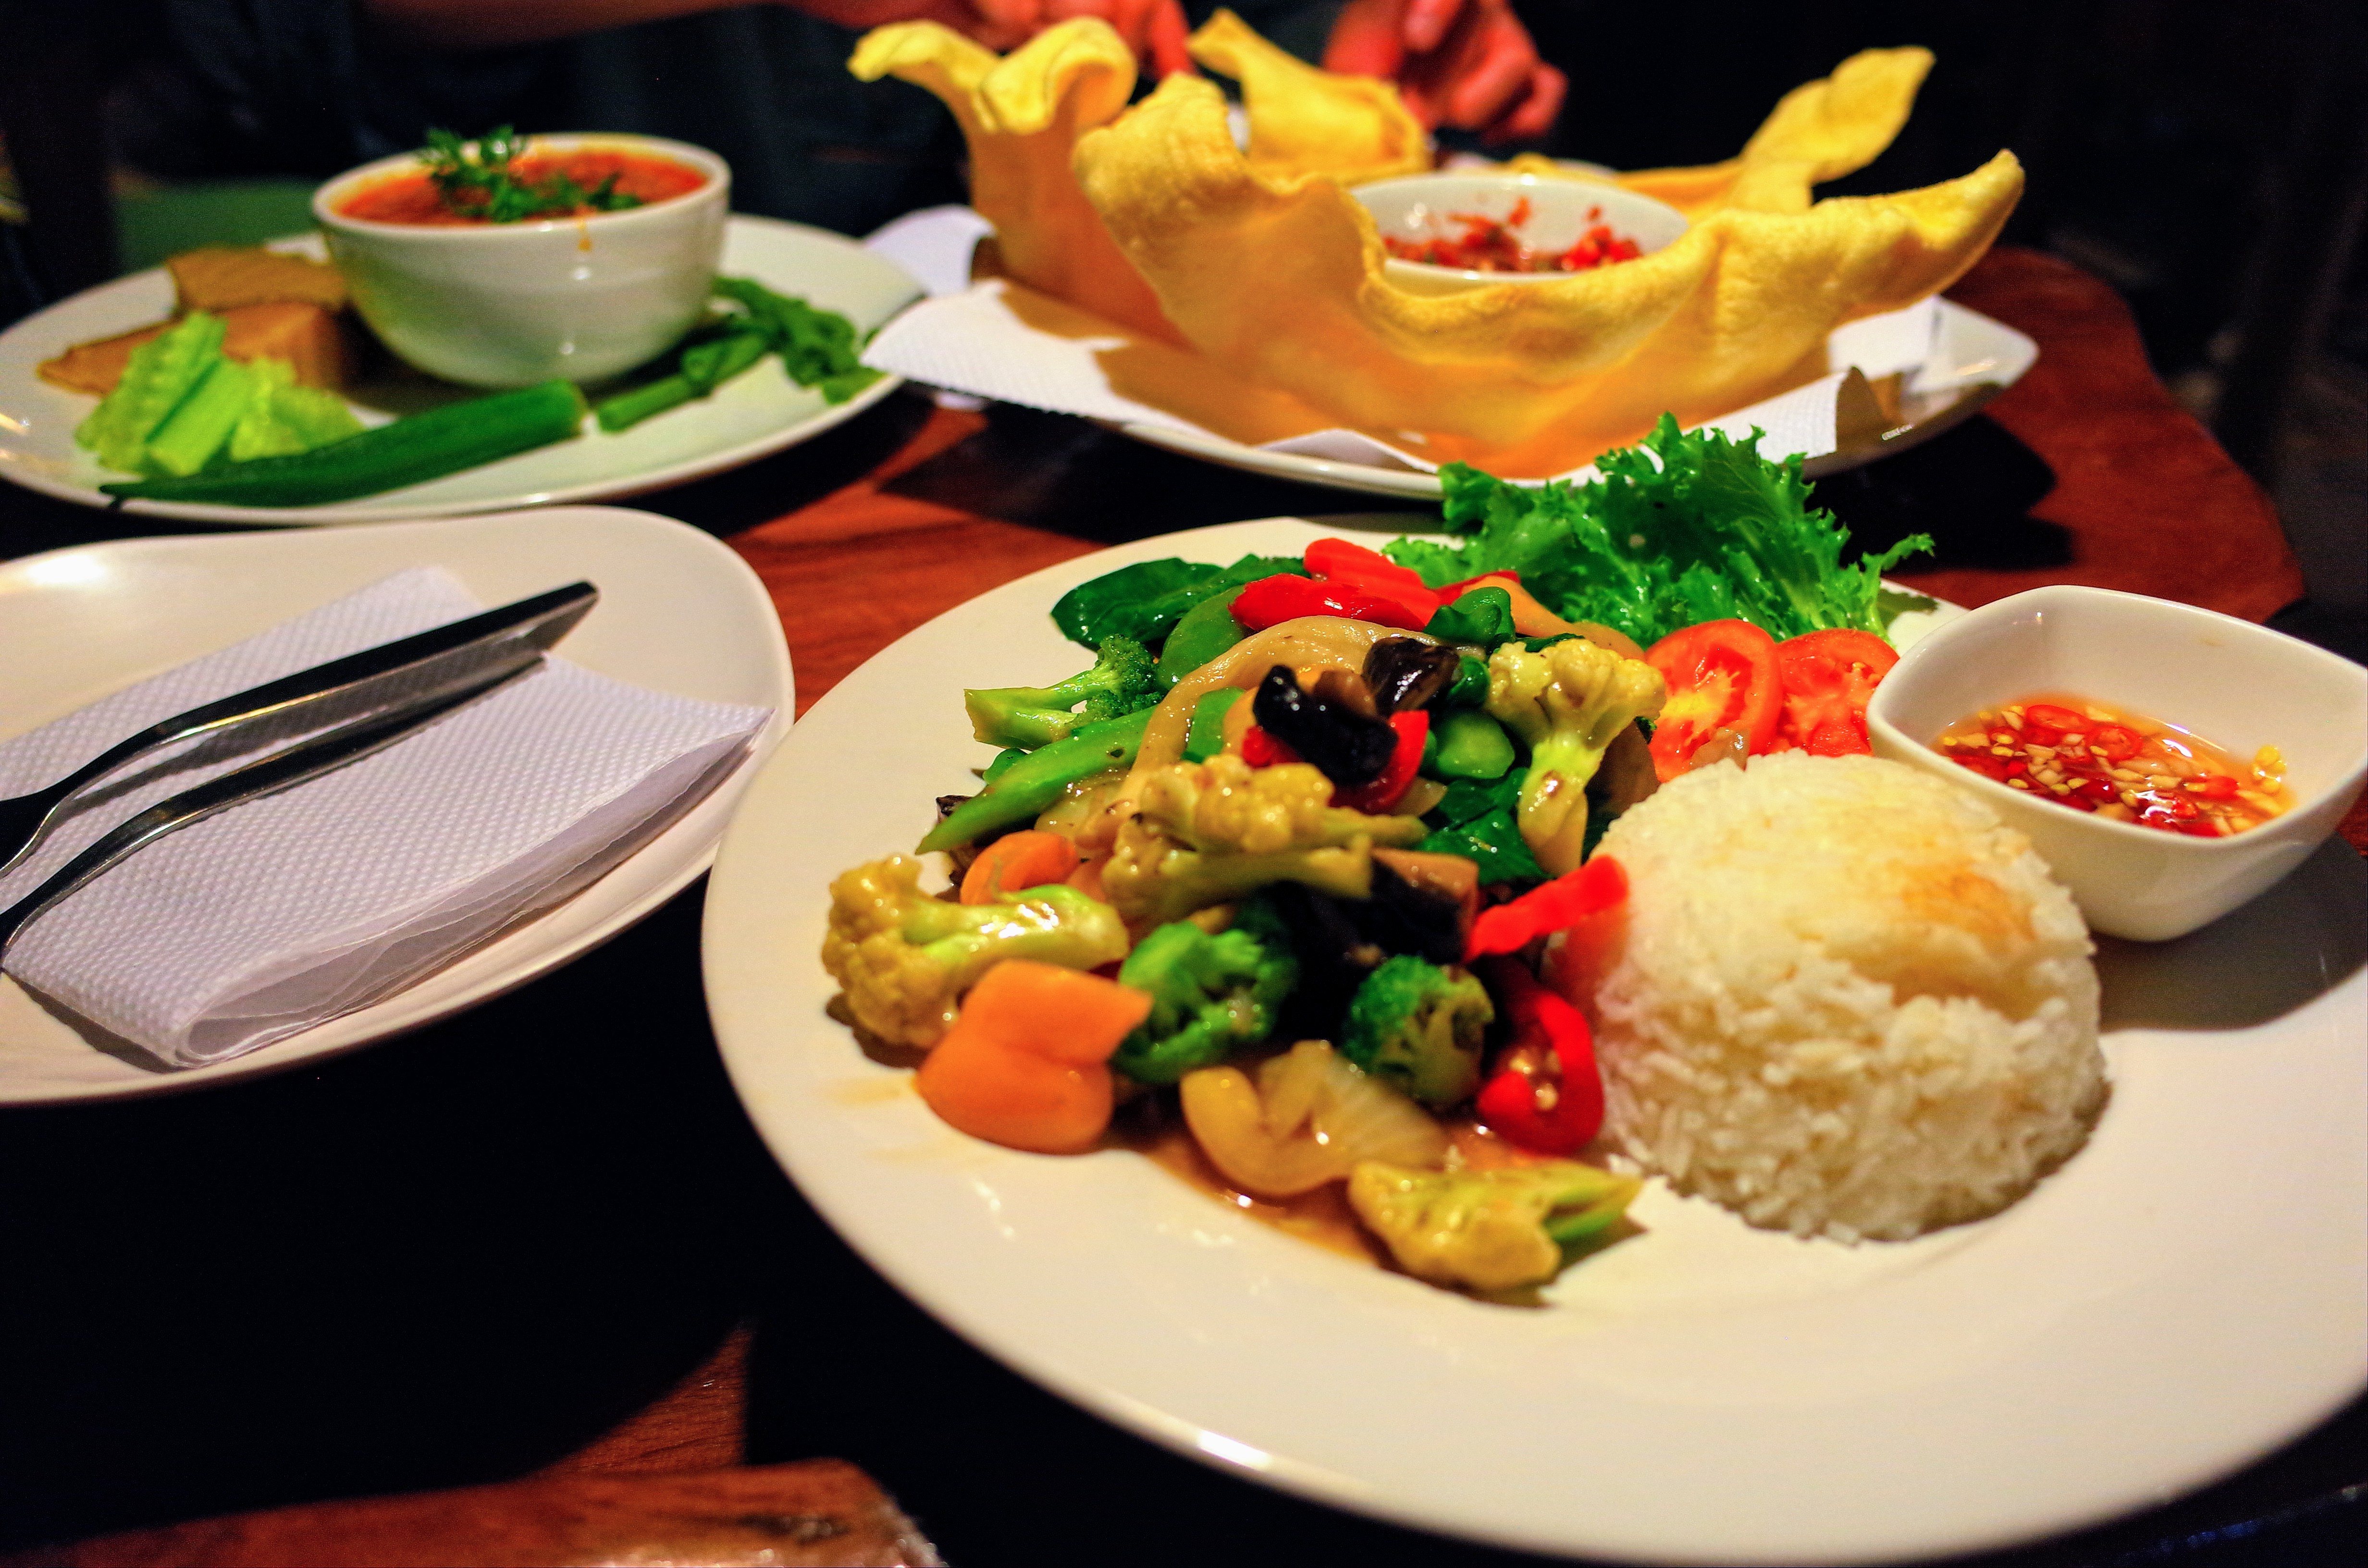 Salween River Restaurantの食事の写真。とても美味しい。